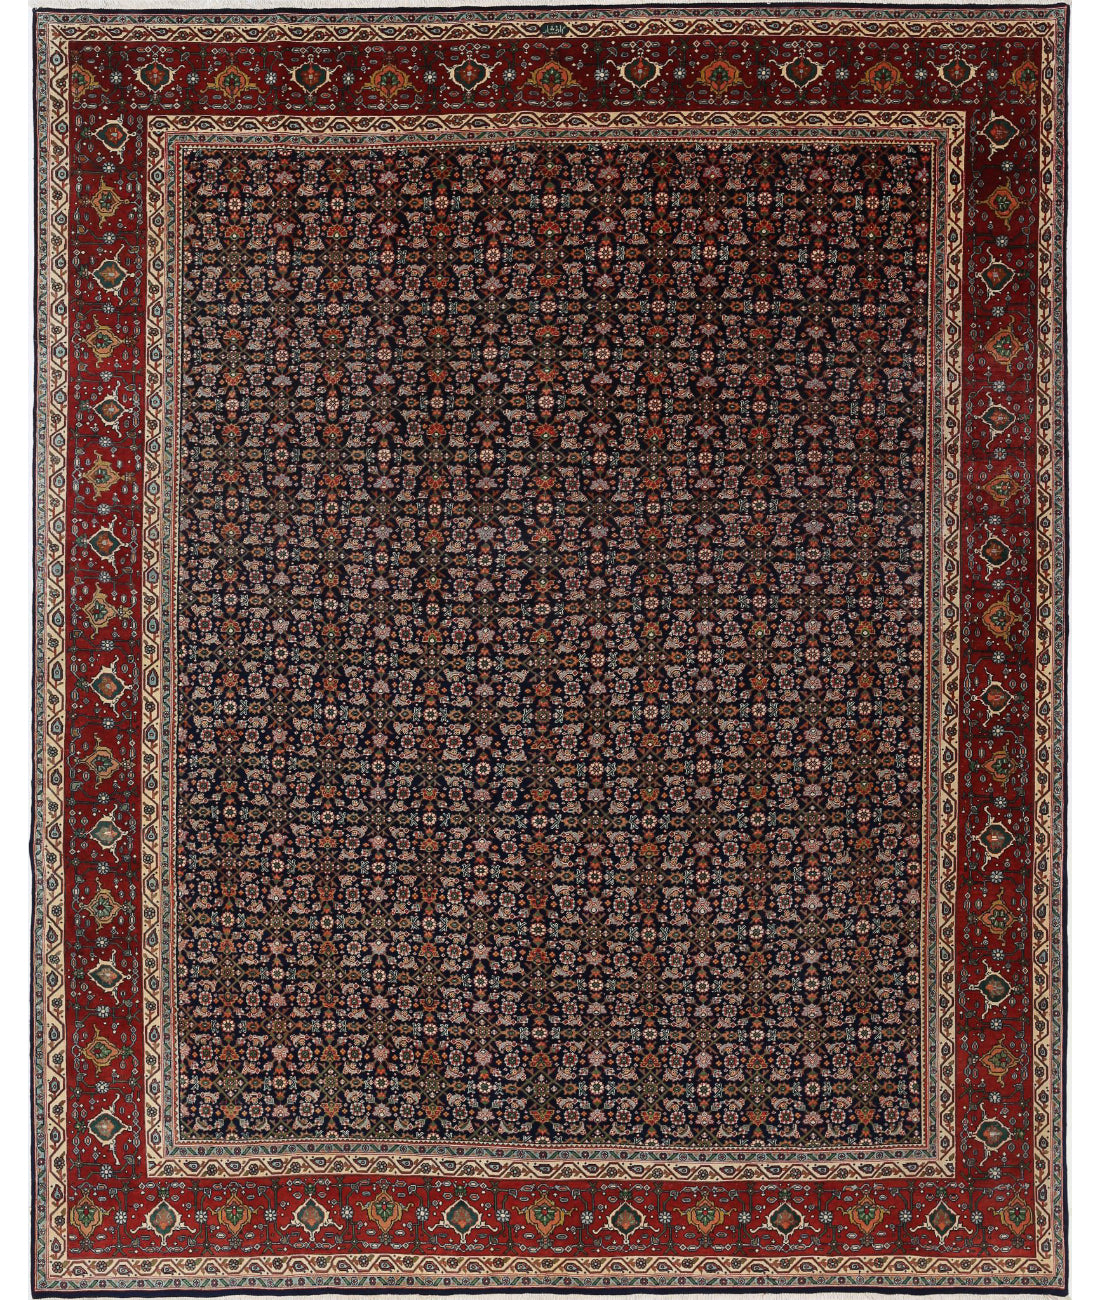 Hand Knotted Persian Bijar Wool Rug - 9'11'' x 13'4'' 9'11'' x 13'4'' (298 X 400) / Blue / Red